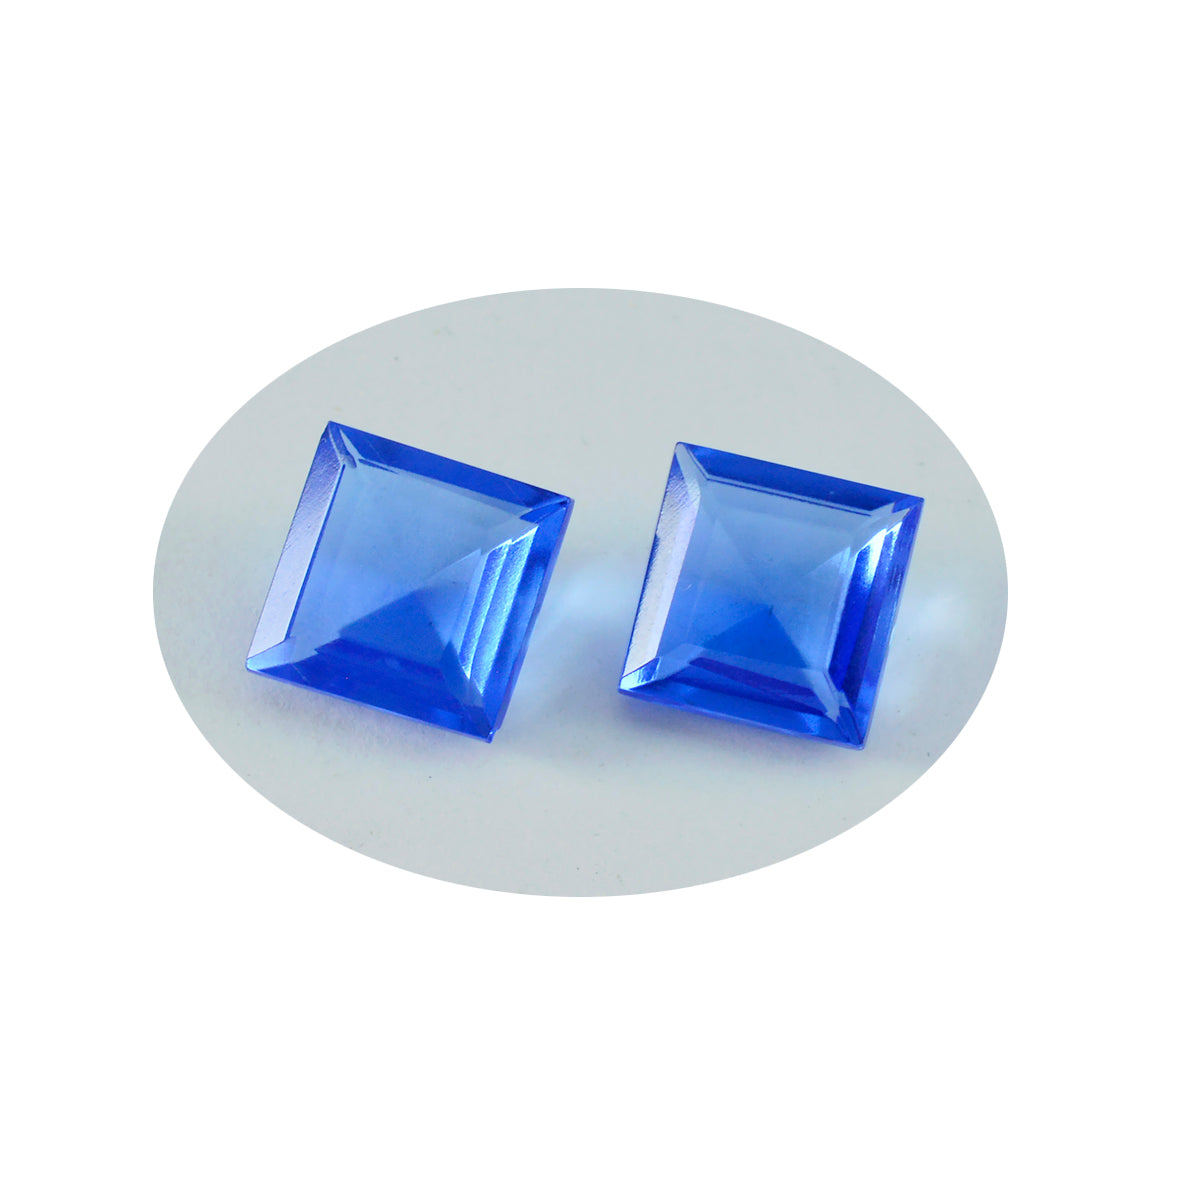 riyogems 1 st blå safir cz facetterad 13x13 mm fyrkantig form utmärkt kvalitet lös ädelsten